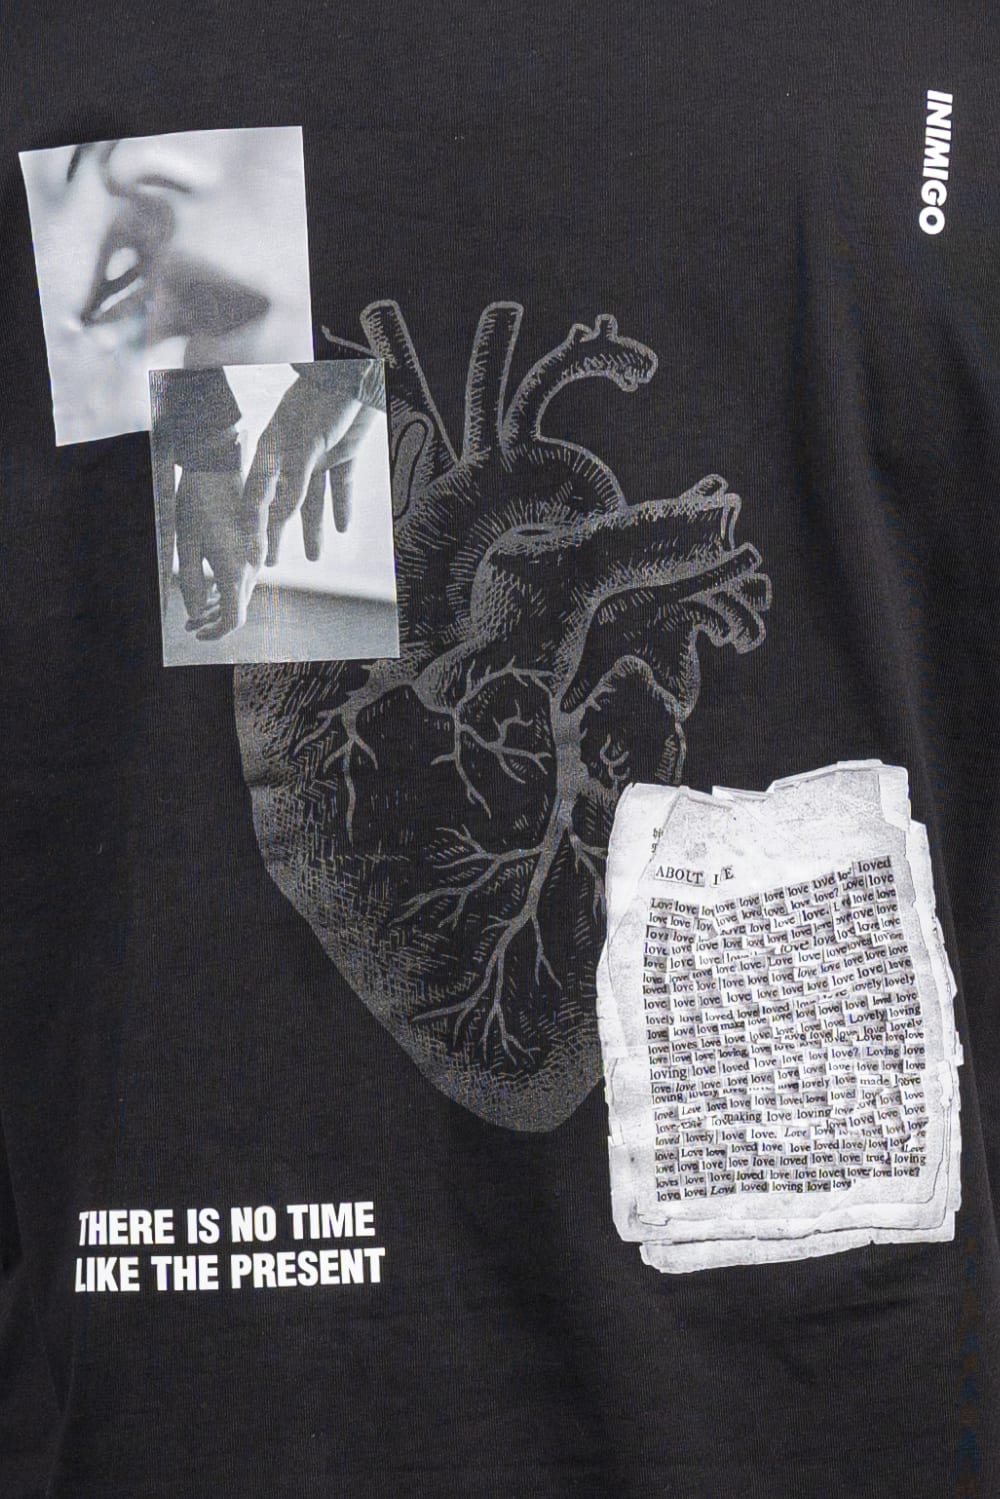 Heartbeat Print Oversized T-shirt